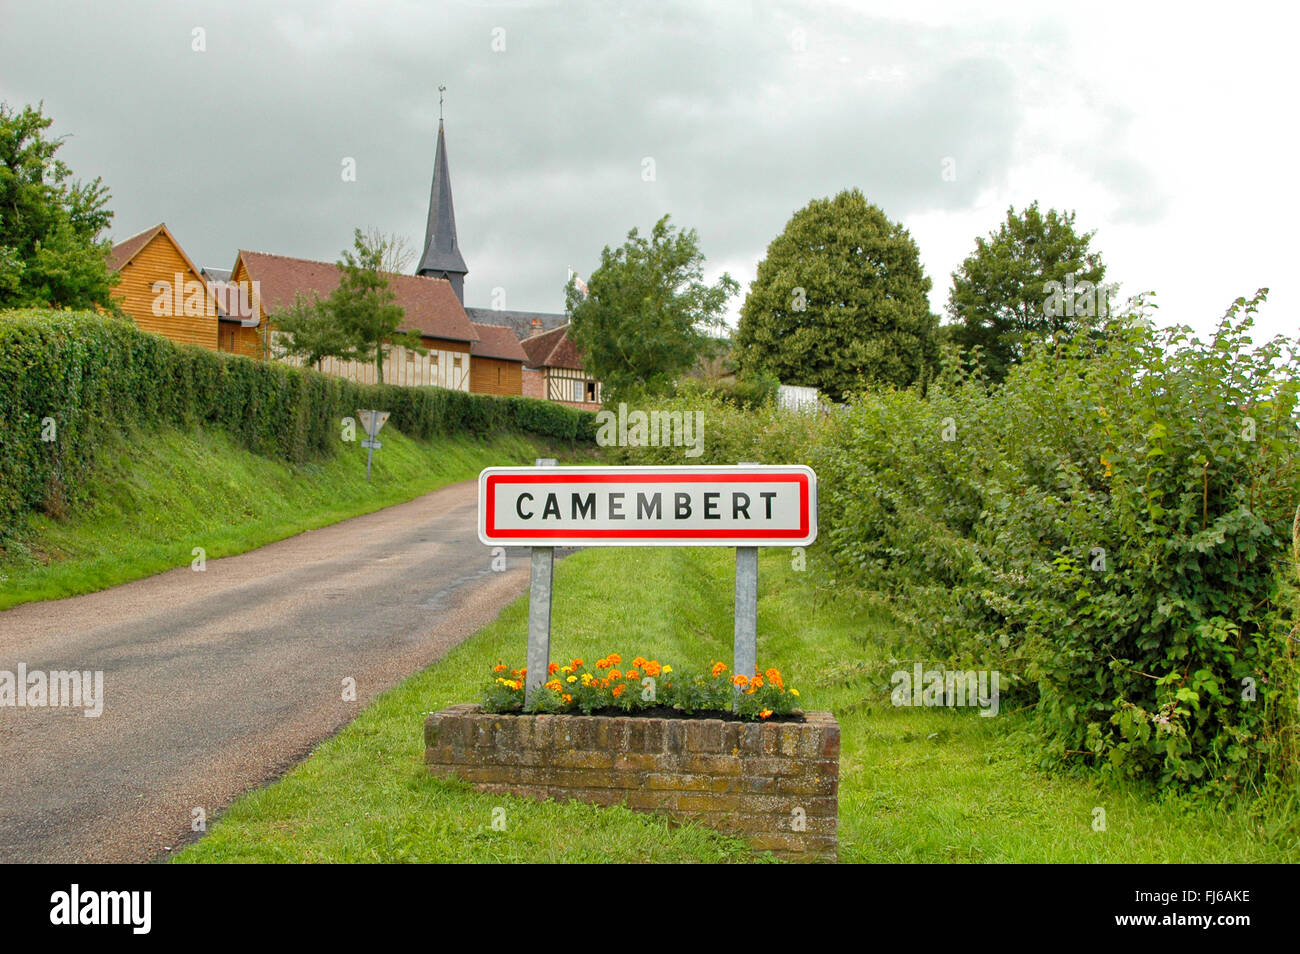 La ville signe de camembert, lieu d'origine le camembert, France, Normandie, Aquitaine, Camembert Banque D'Images